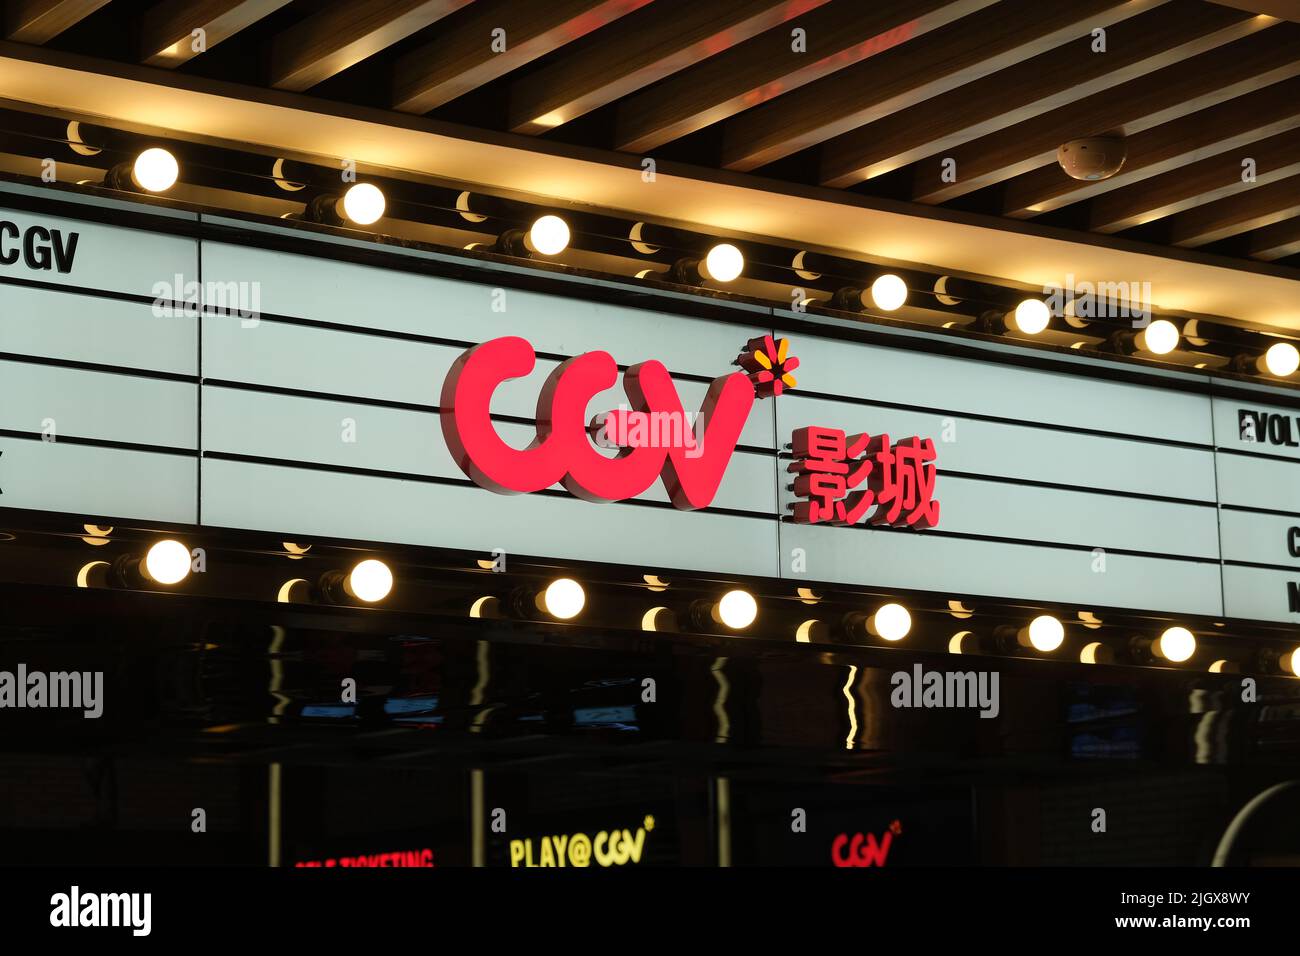 Shanghai.Chine-novembre 2021 : logo de la marque CGV Cinemas dans le cinéma. Une chaîne de cinéma coréenne Banque D'Images